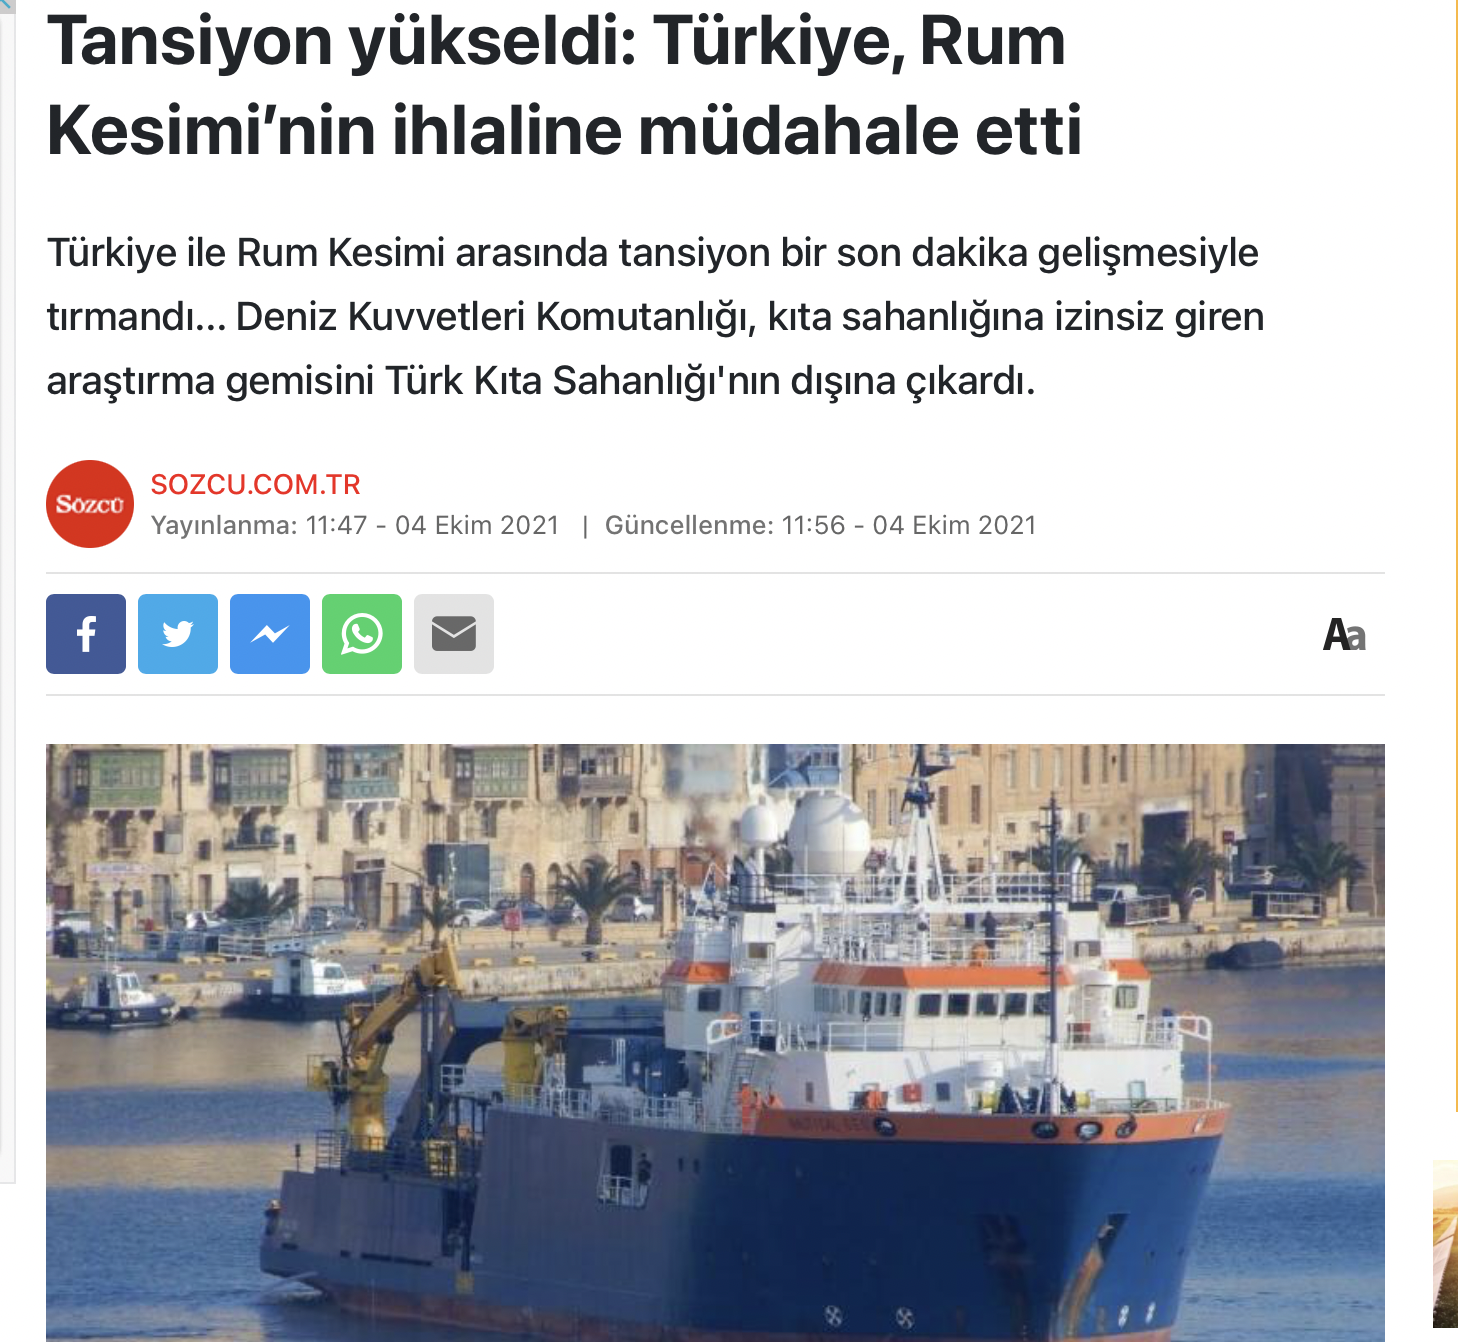 Τουρκικά δημοσιεύματα καθ΄υπαγόρευση από το καθεστώς 